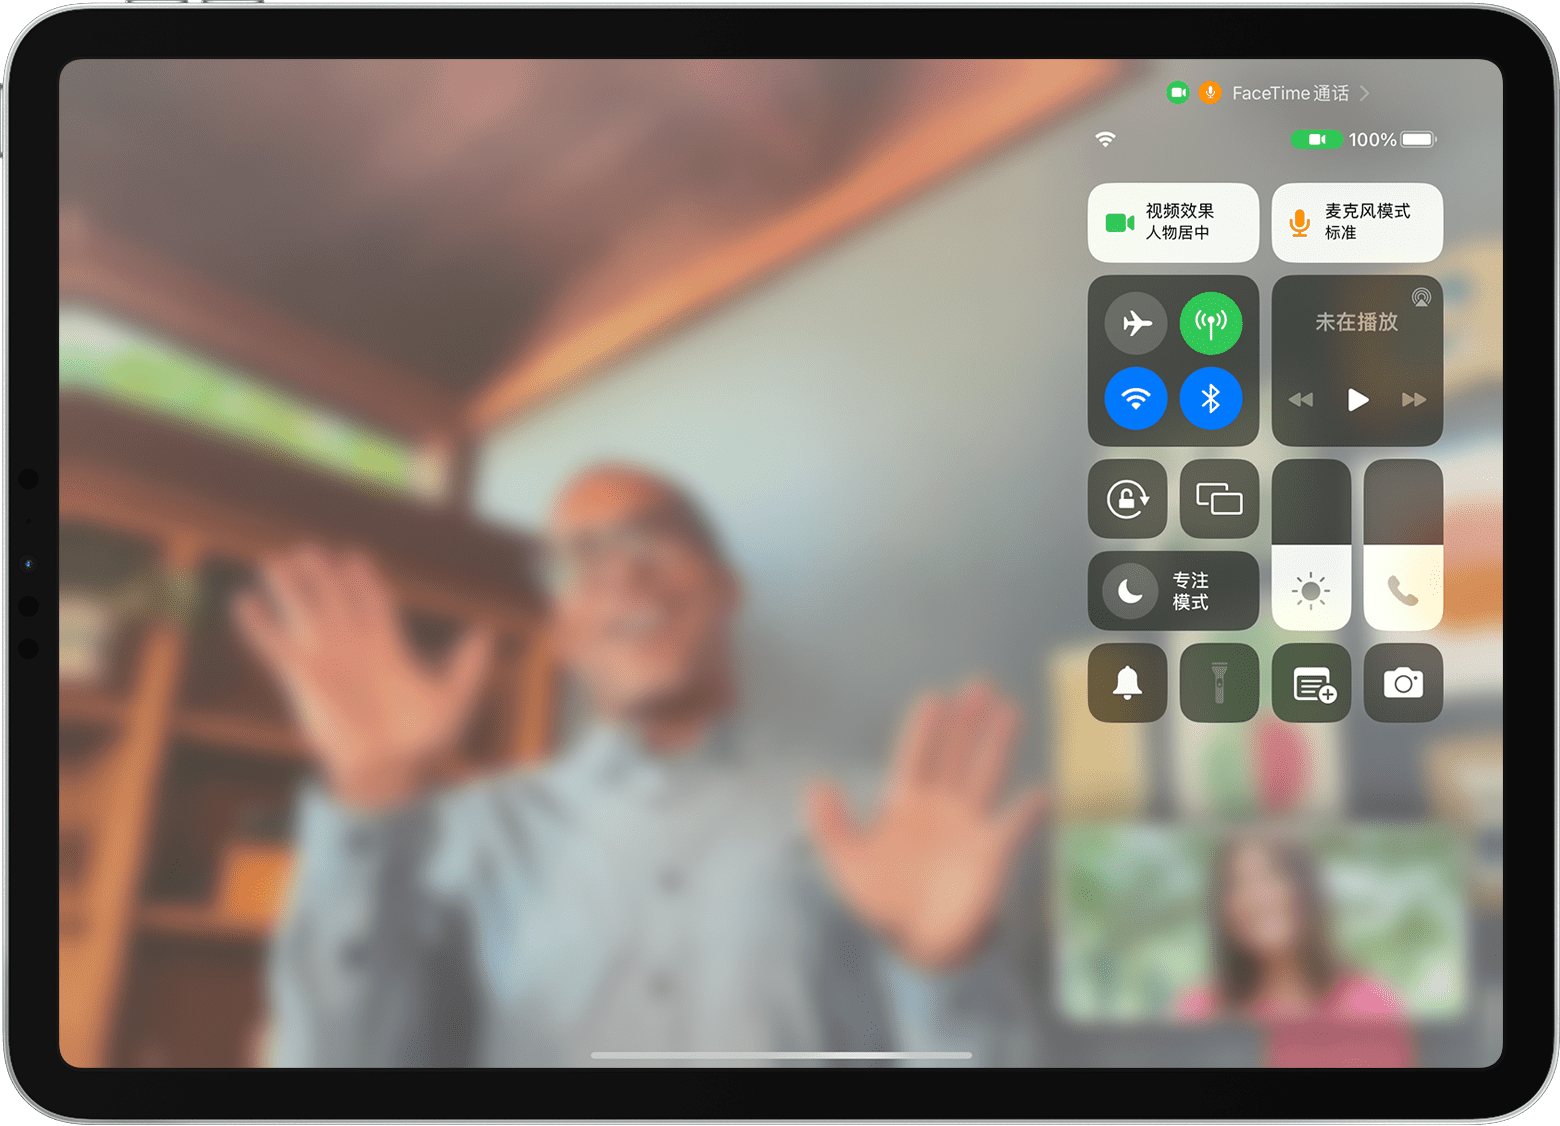 iPad 屏幕显示正在进行 FaceTime 通话，而且可以看到“控制中心”，包括“视频效果”按钮